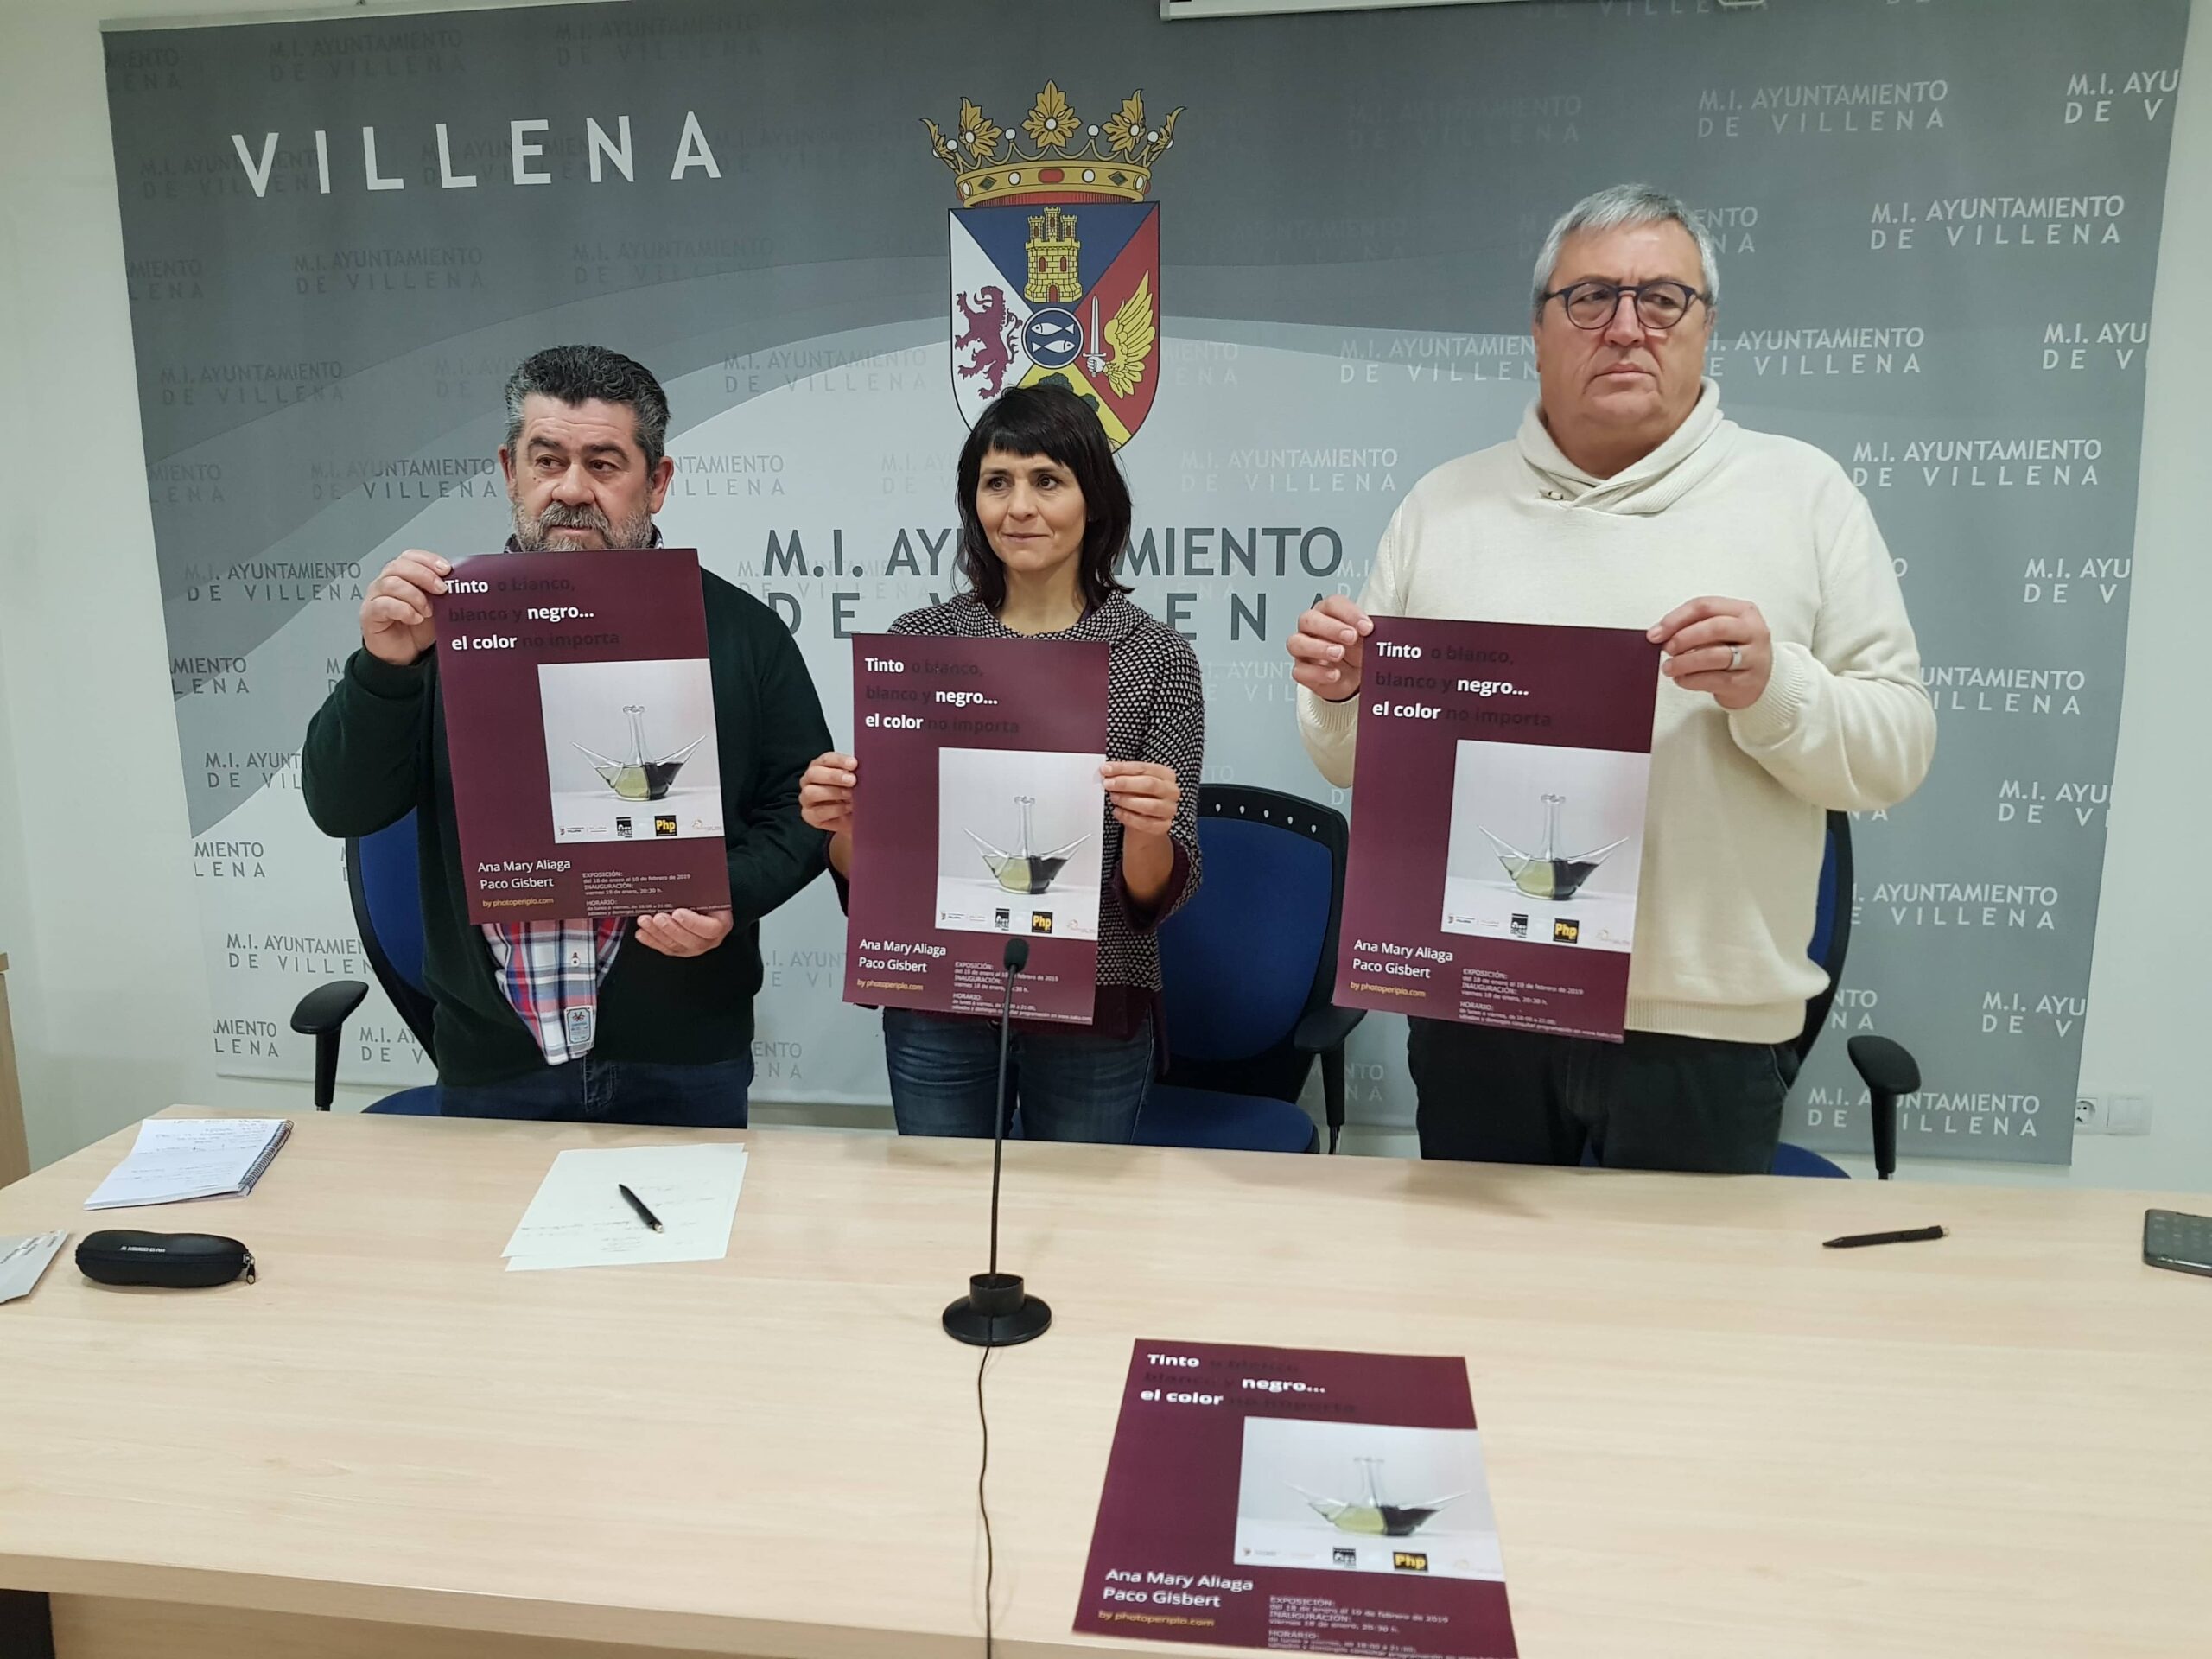 Una exposición fotográfica promocionará el vino que se elabora en Villena